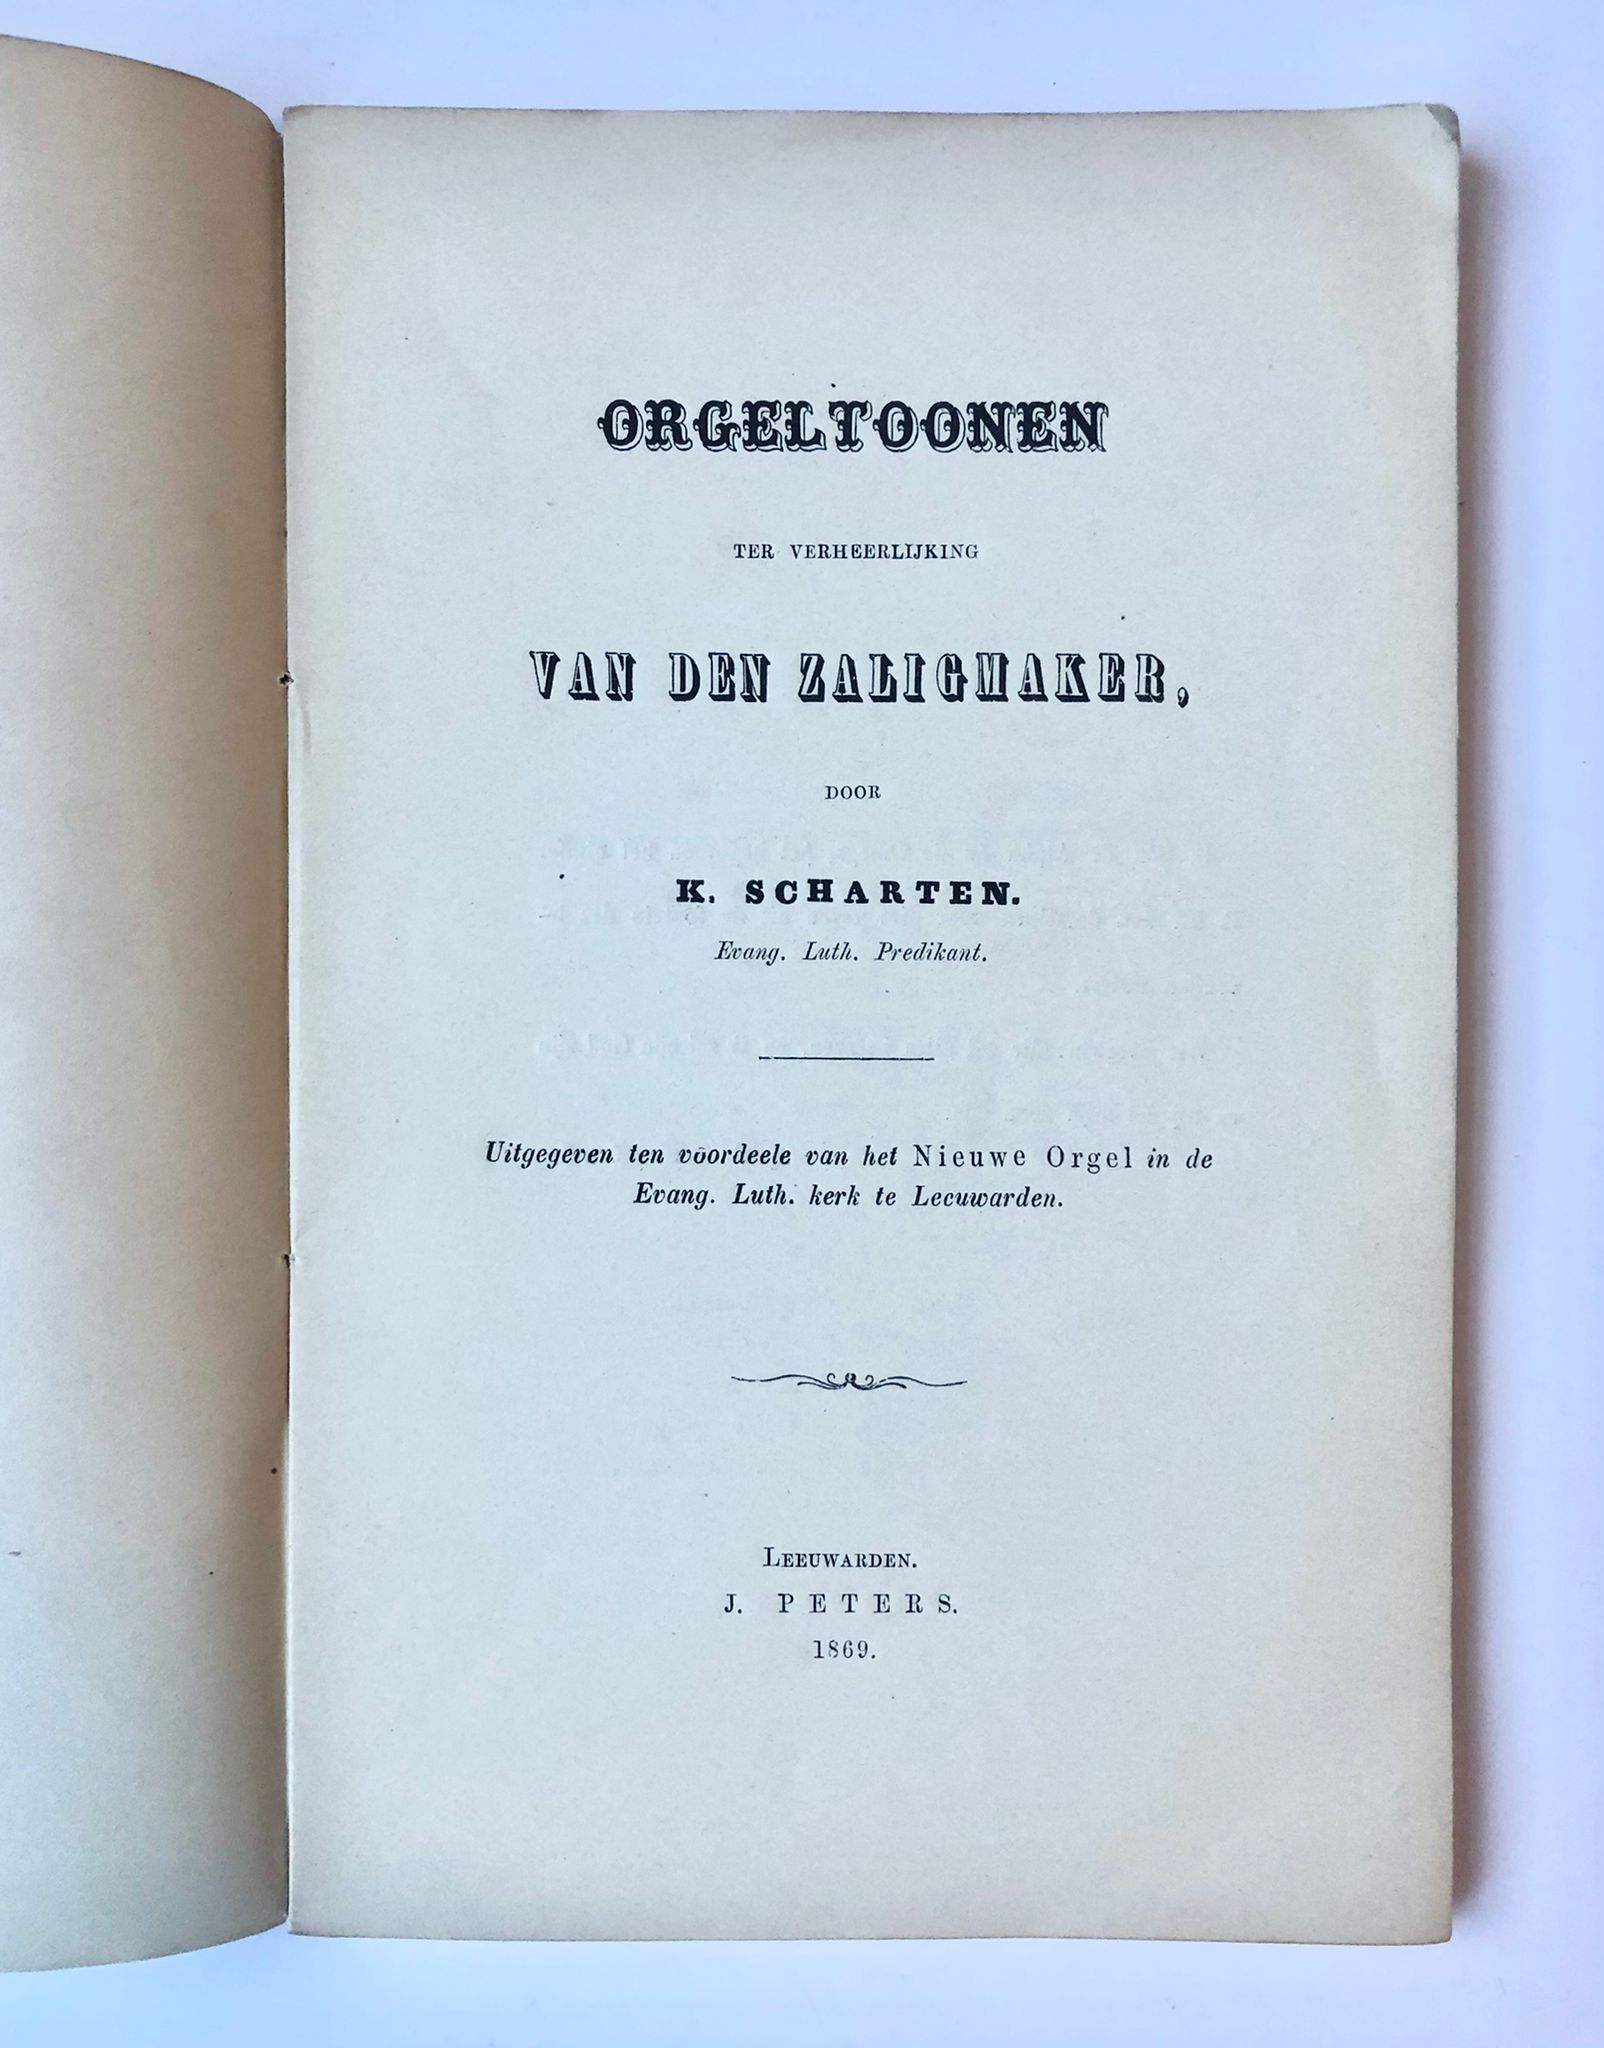 [Leeuwarden, music, organ, 1869] Orgeltoonen ter verheerlijking van den zaligmaker, J. Peters, Leeuwarden, 1869, 97 pp.